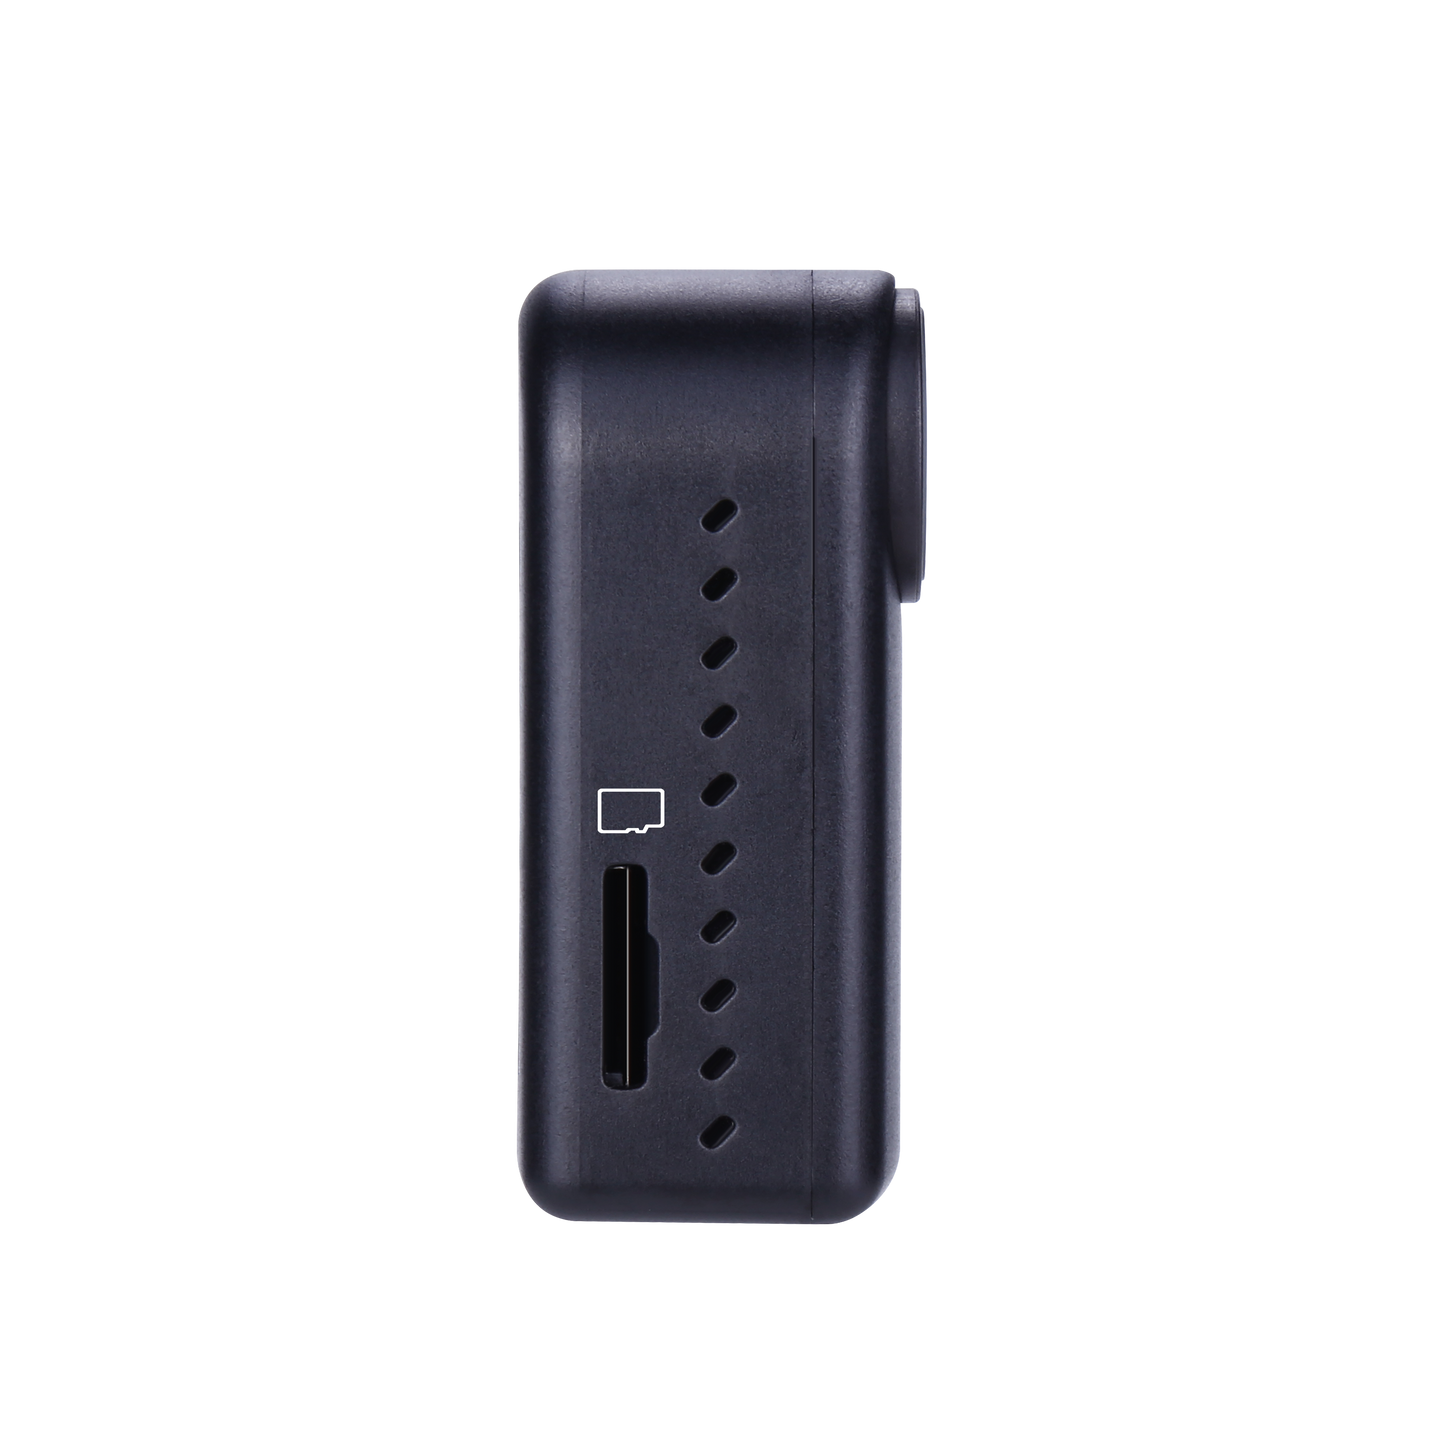 Hawkeye Thumb 2 4K アクション カメラ - 磁気、ペットに優しい、ジャイロフロー安定化、WiFi 対応、ワイド電圧、ND16 フィルター付き PC CAM